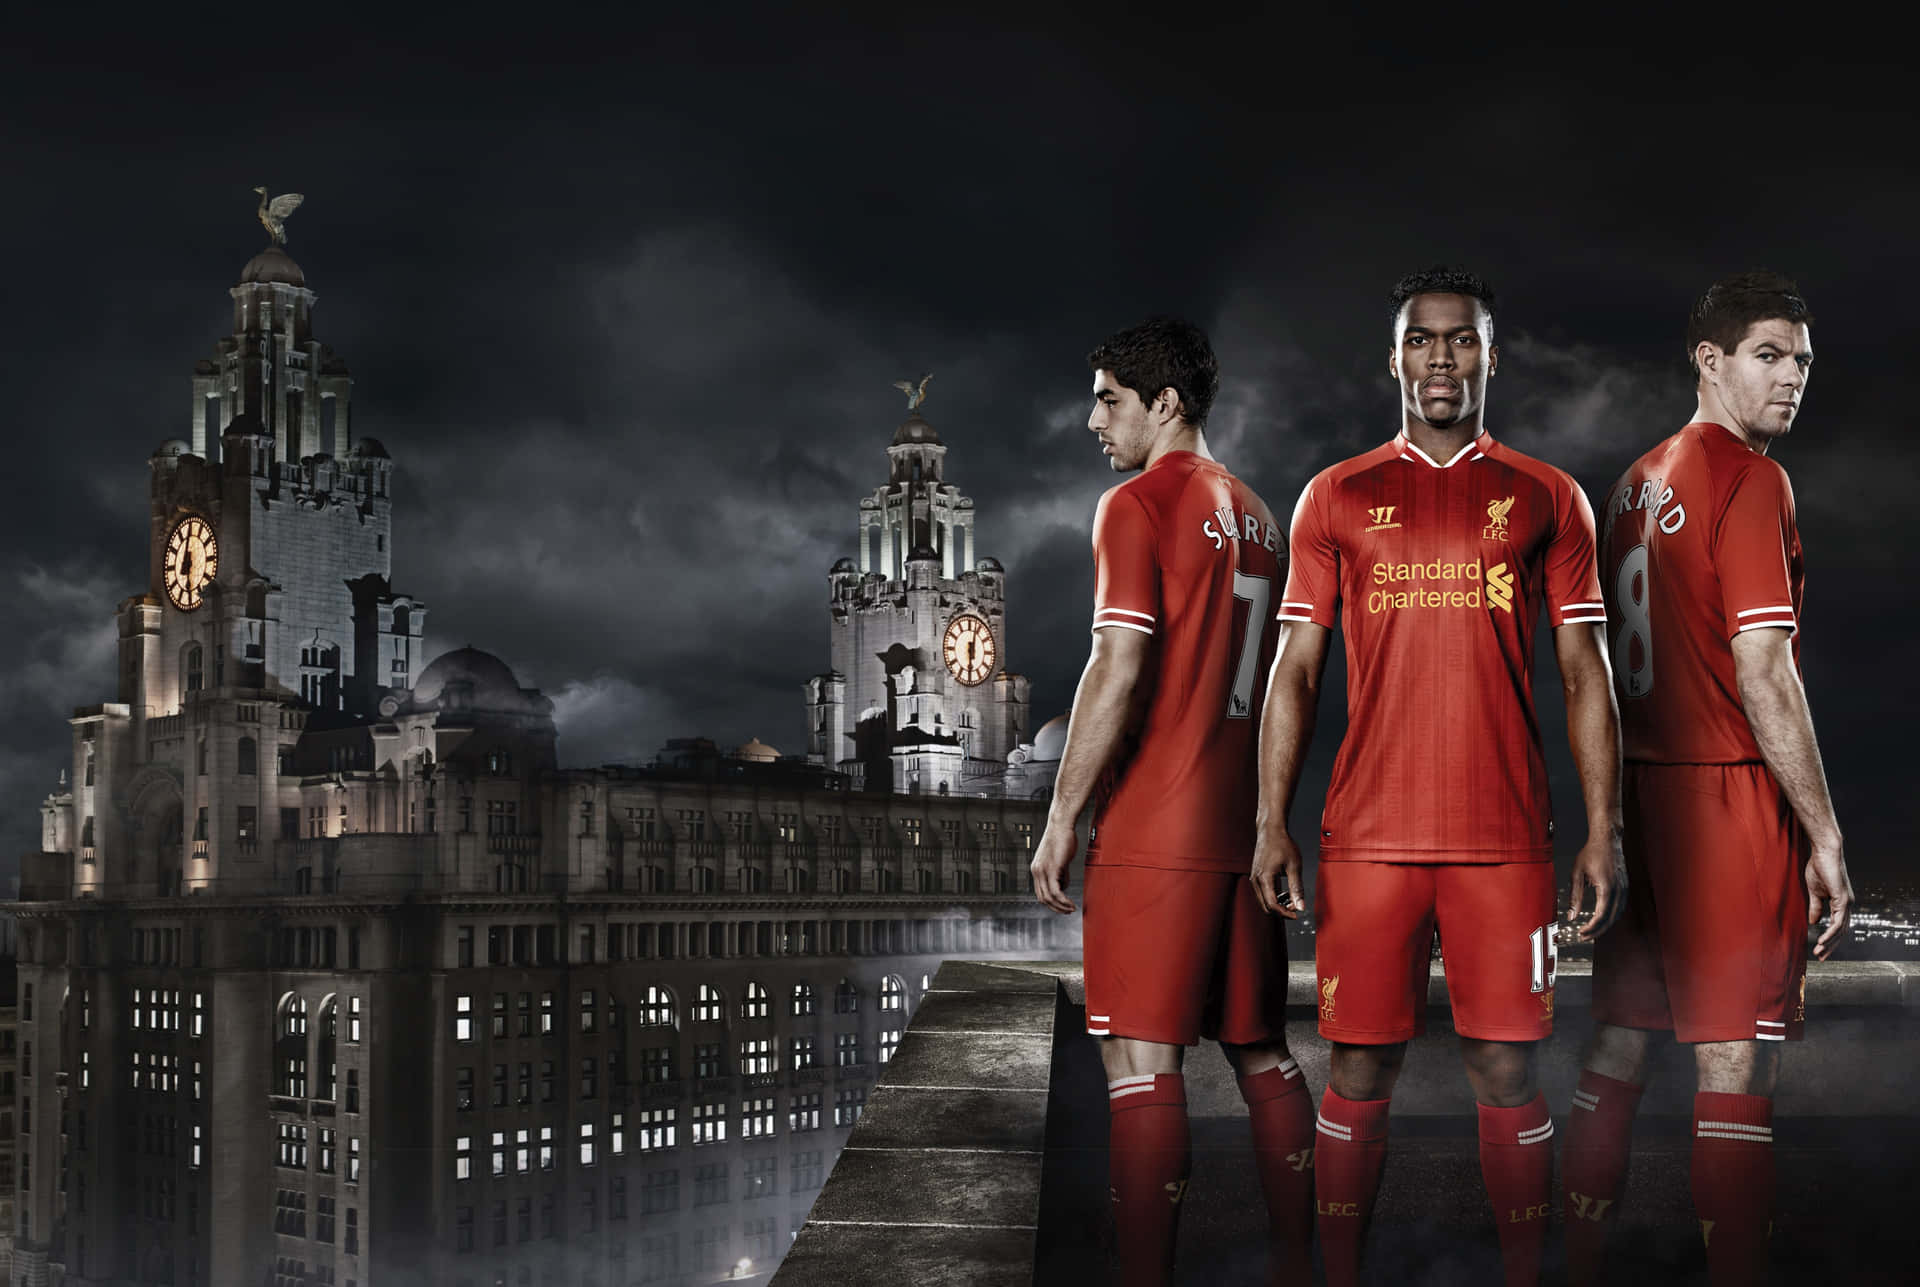 Vis din loyalitet til Liverpool FC. Wallpaper